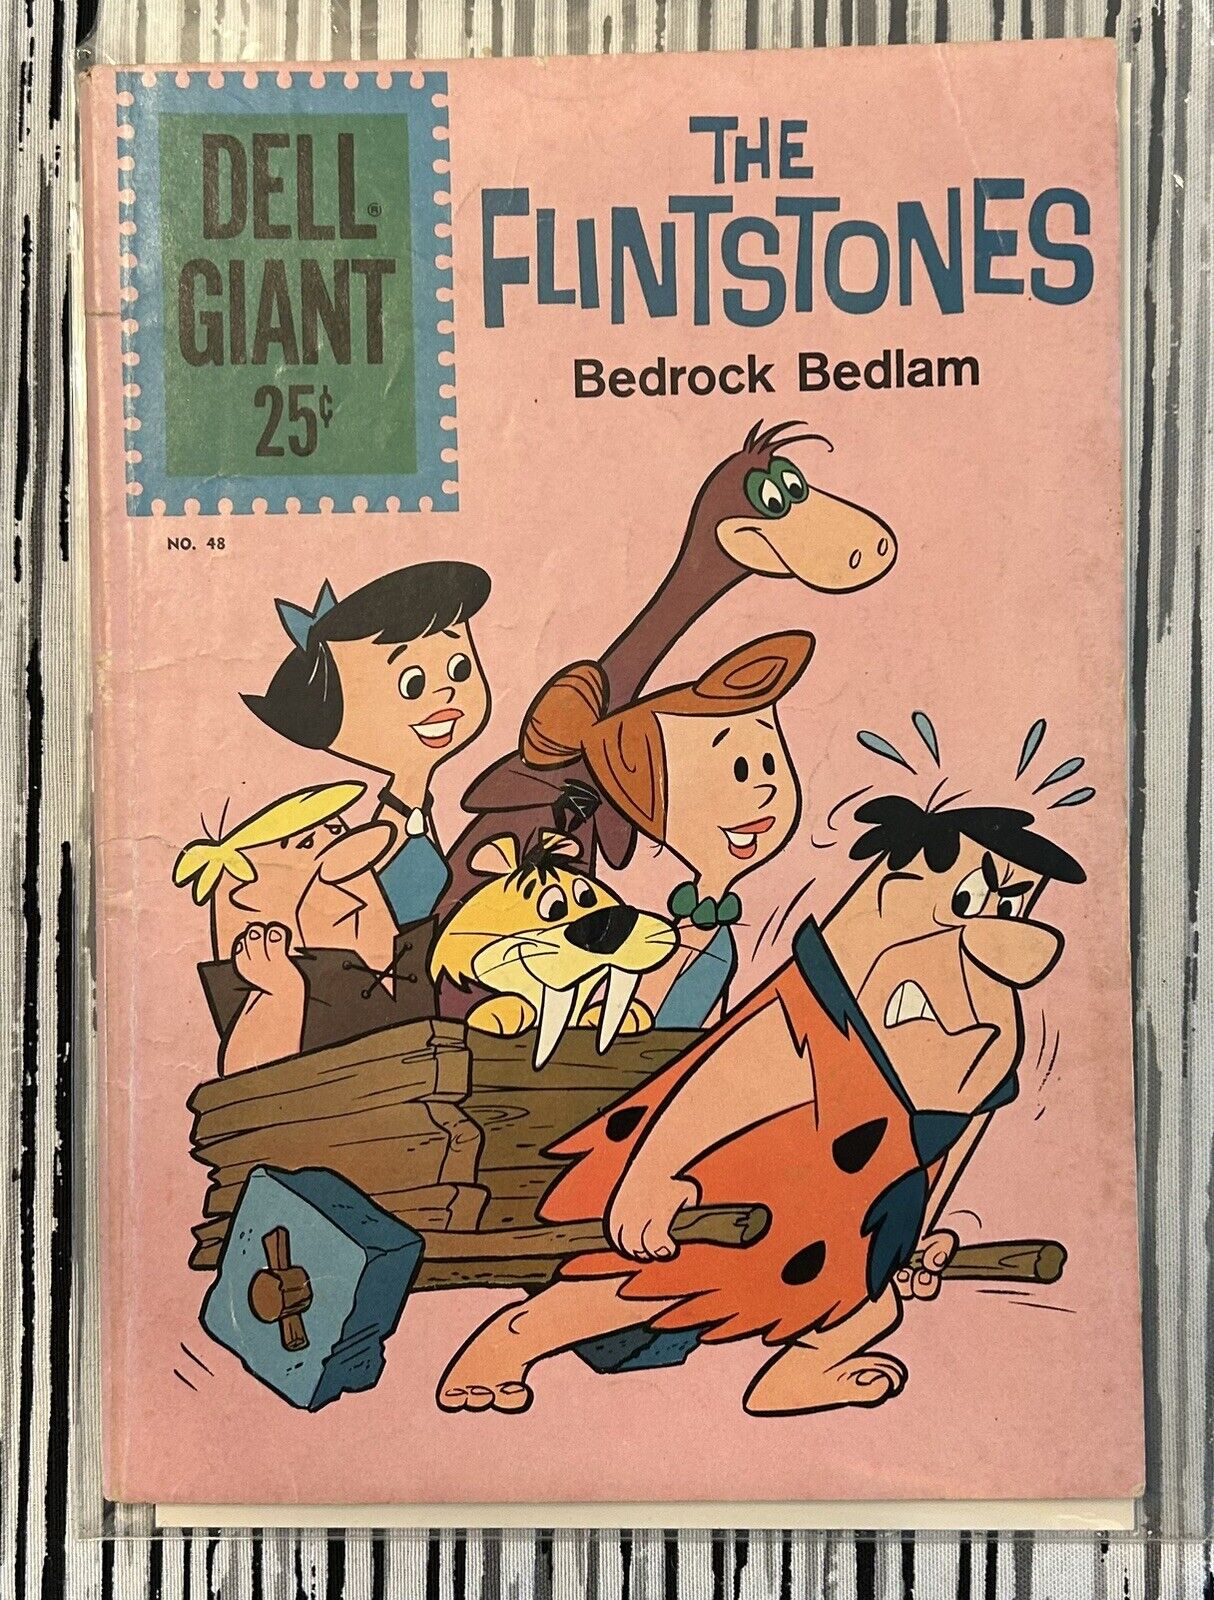 Dell Giant #48 The Flintstones Bedrock Bedlam Plus 3 More 1960’s Comics LOOK